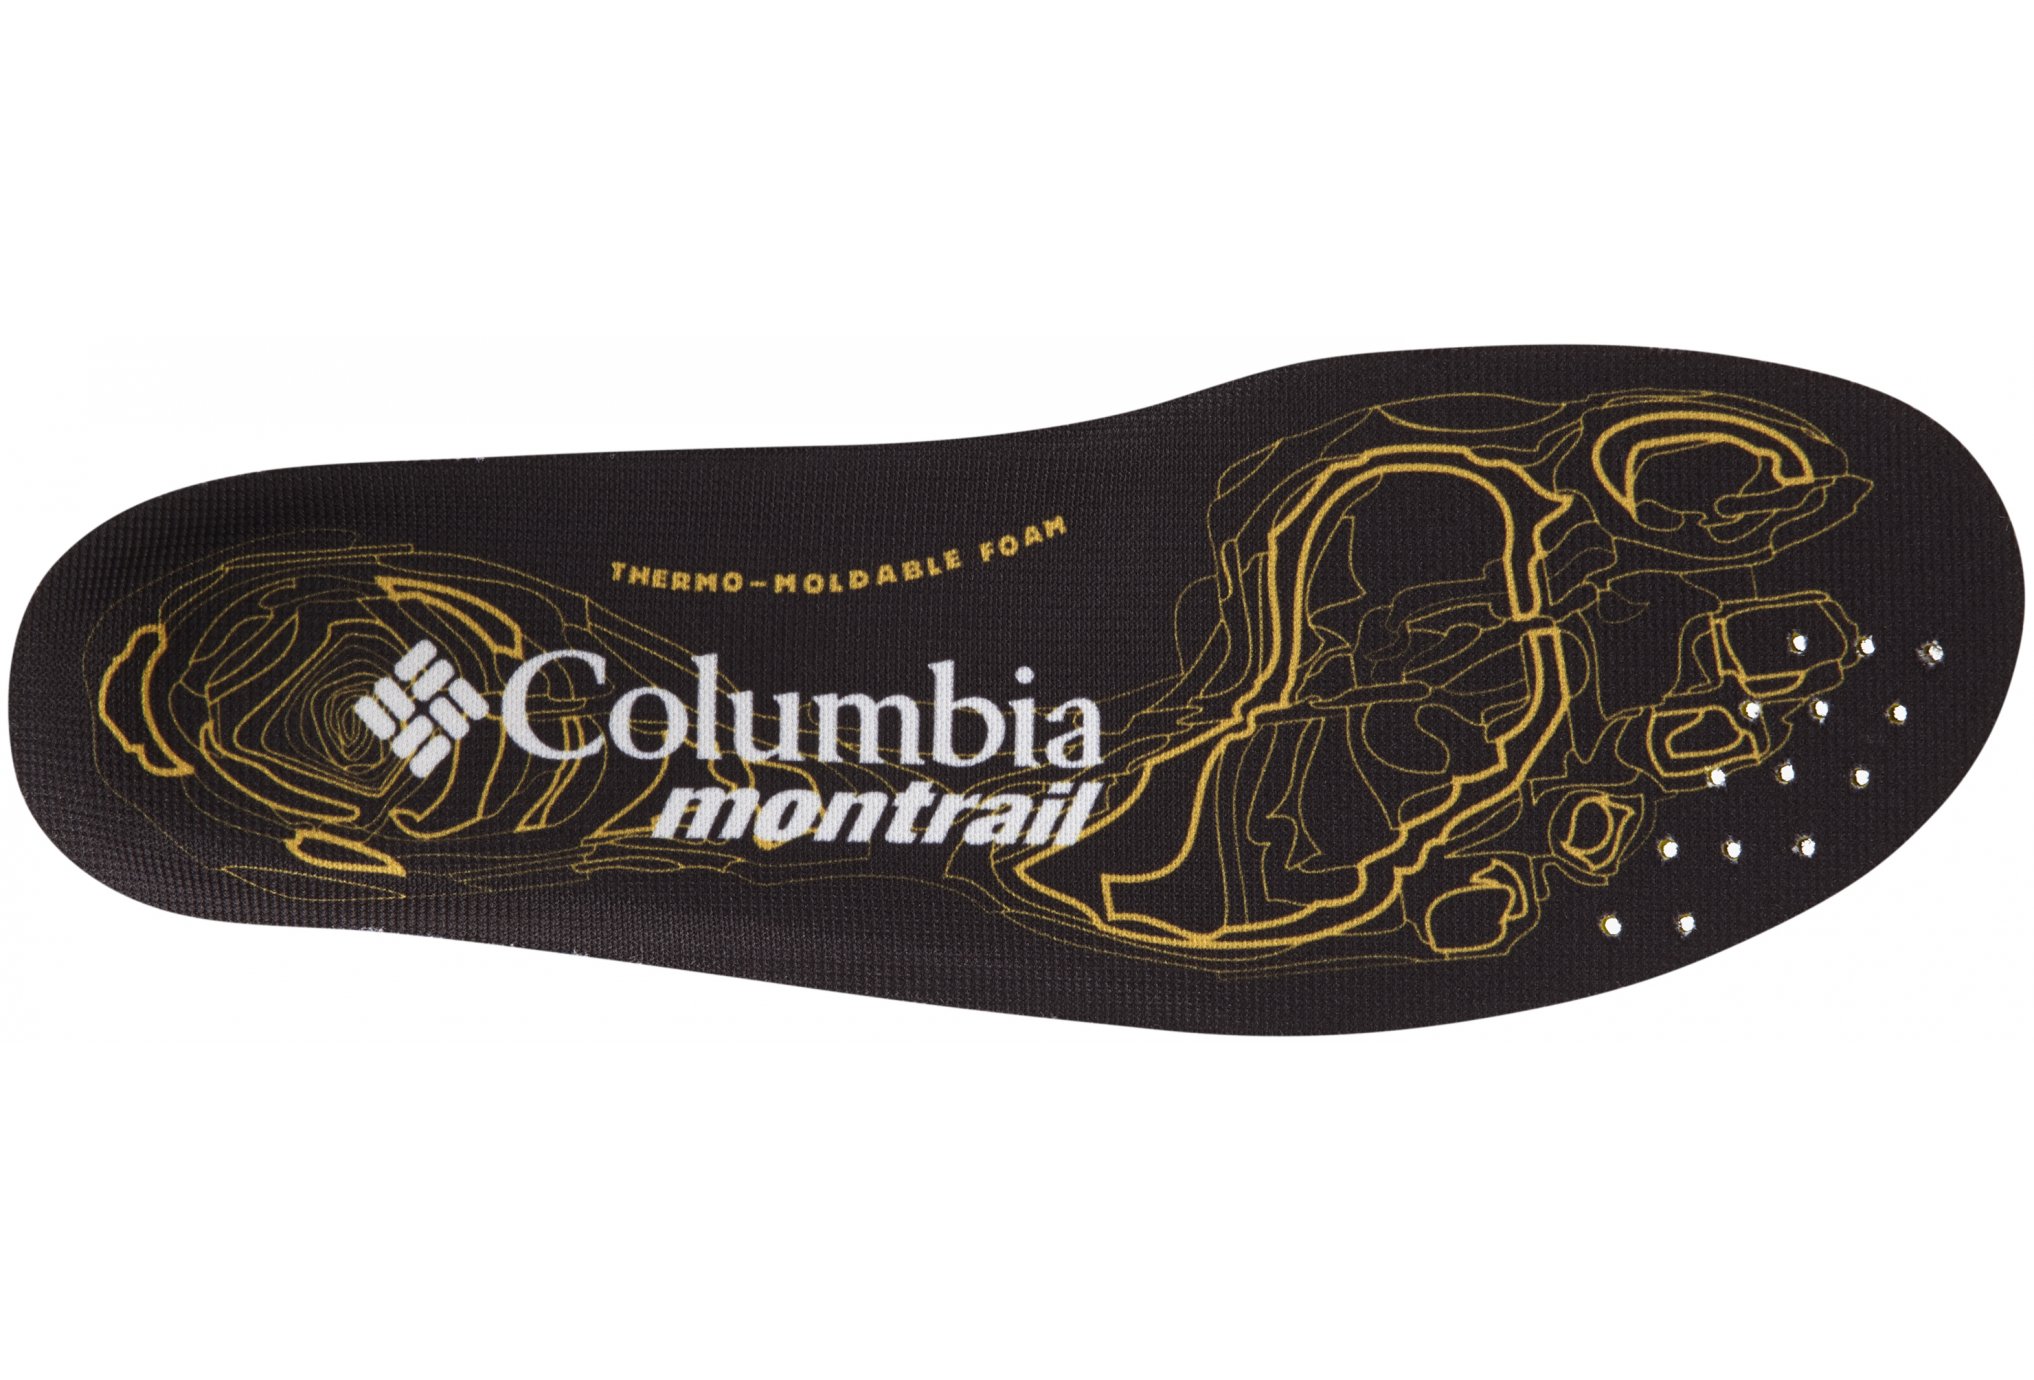 Columbia Montrail enduro-Sole lacets / gutres / semelles